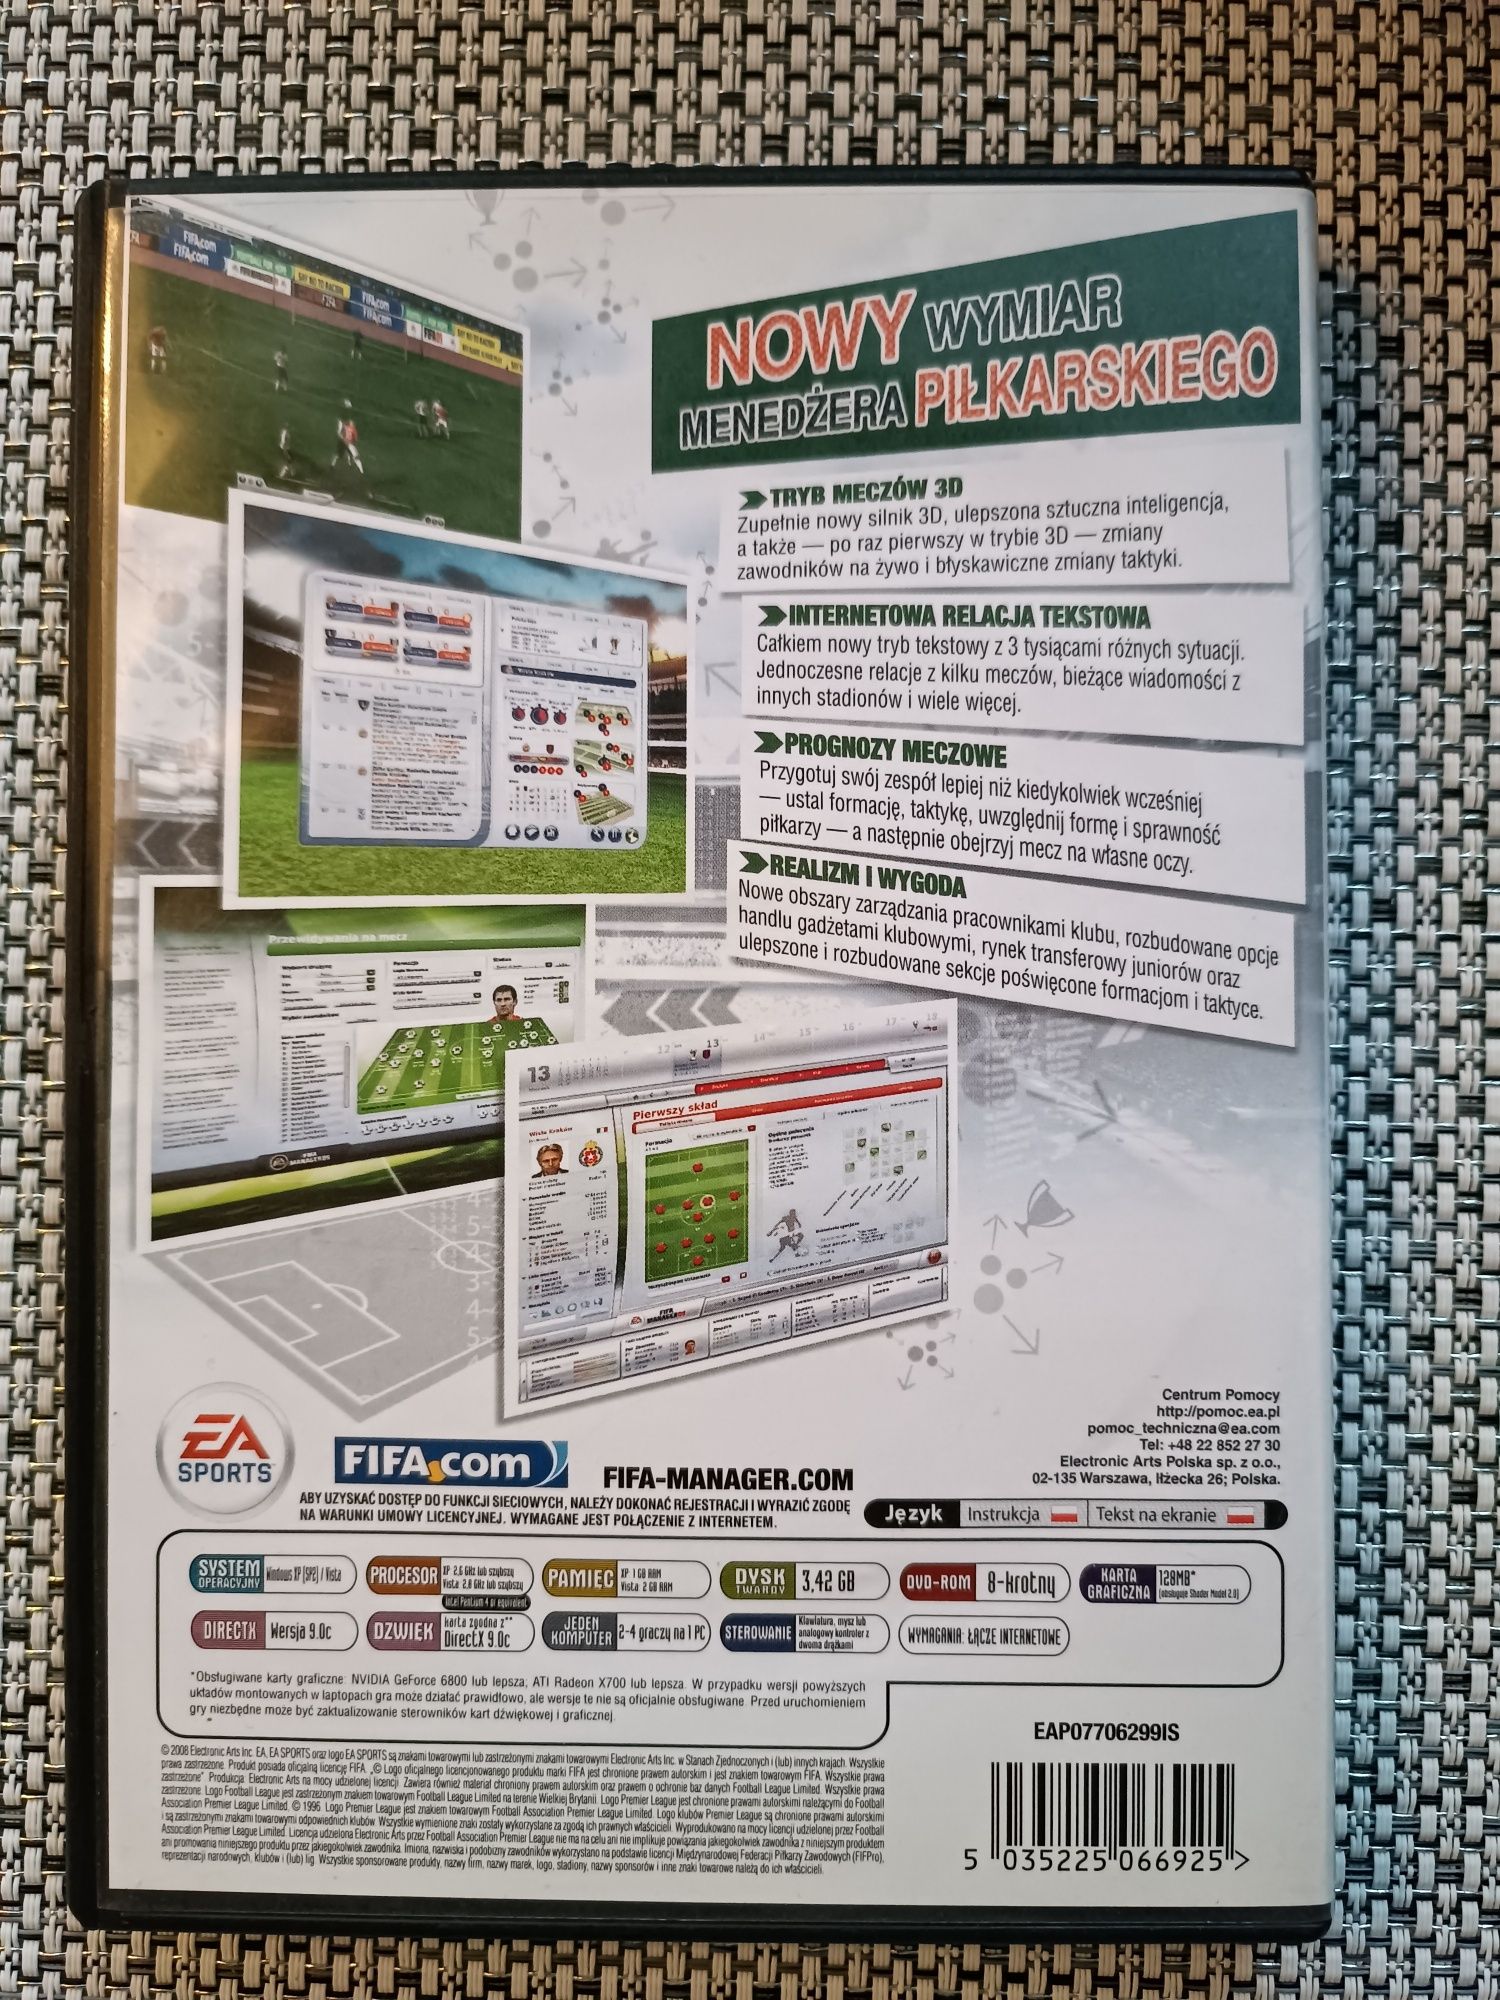 EA Sports FIFA Manager 09 PC polskie wydanie